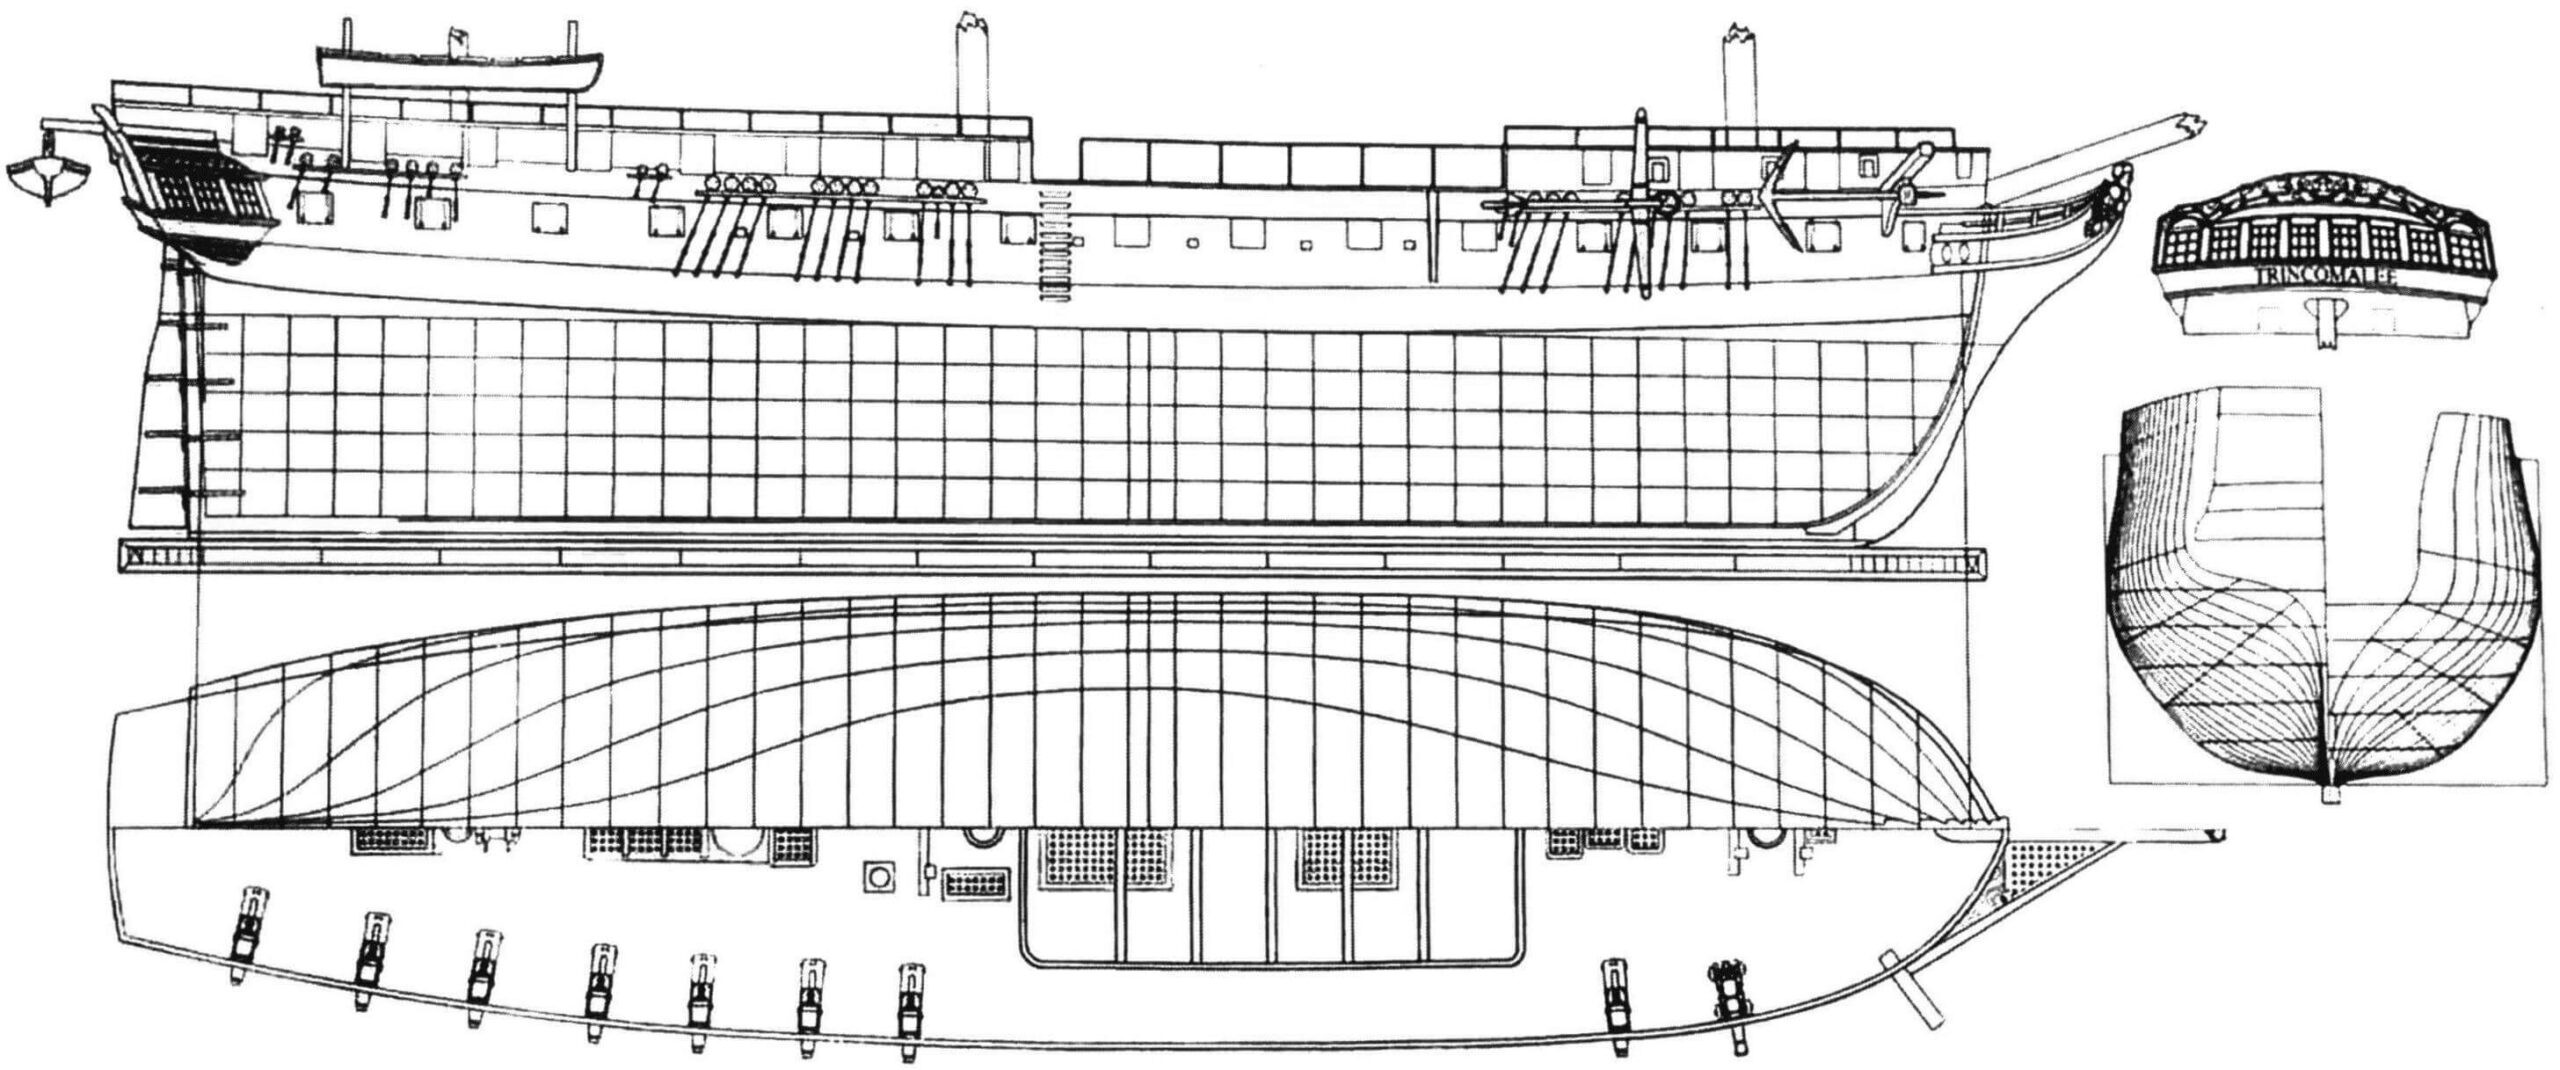 Обший вид и теоретический чертеж фрегата «Тринкомали»: вид сбоку, вид сверху и полуширота, проекция «корпус», деталировка кормовой части